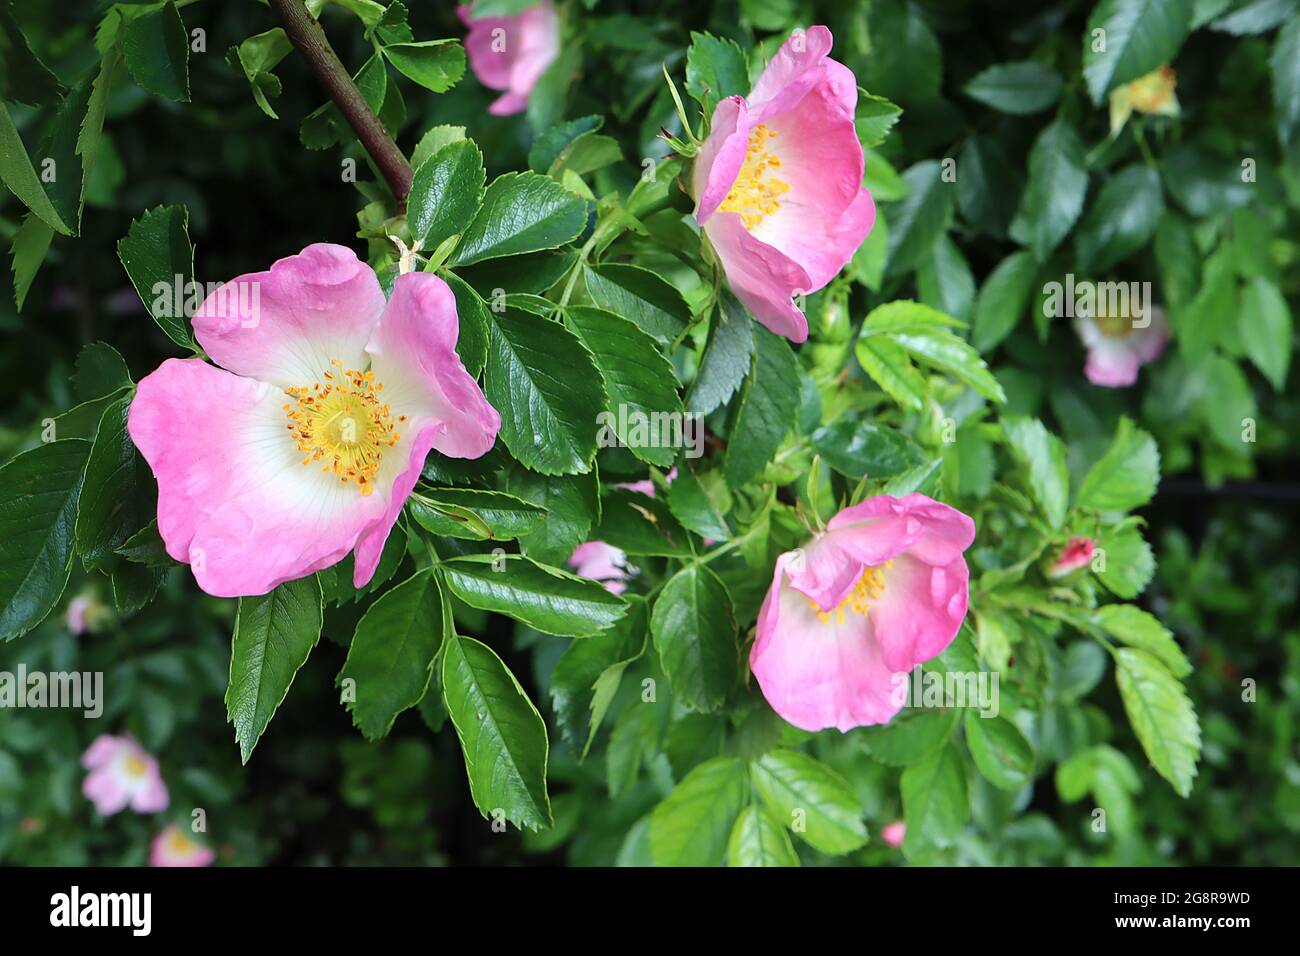 Rosa canina (Shrub rose) dog rose – small pink flowers with white halo,  May, England, UK Stock Photo